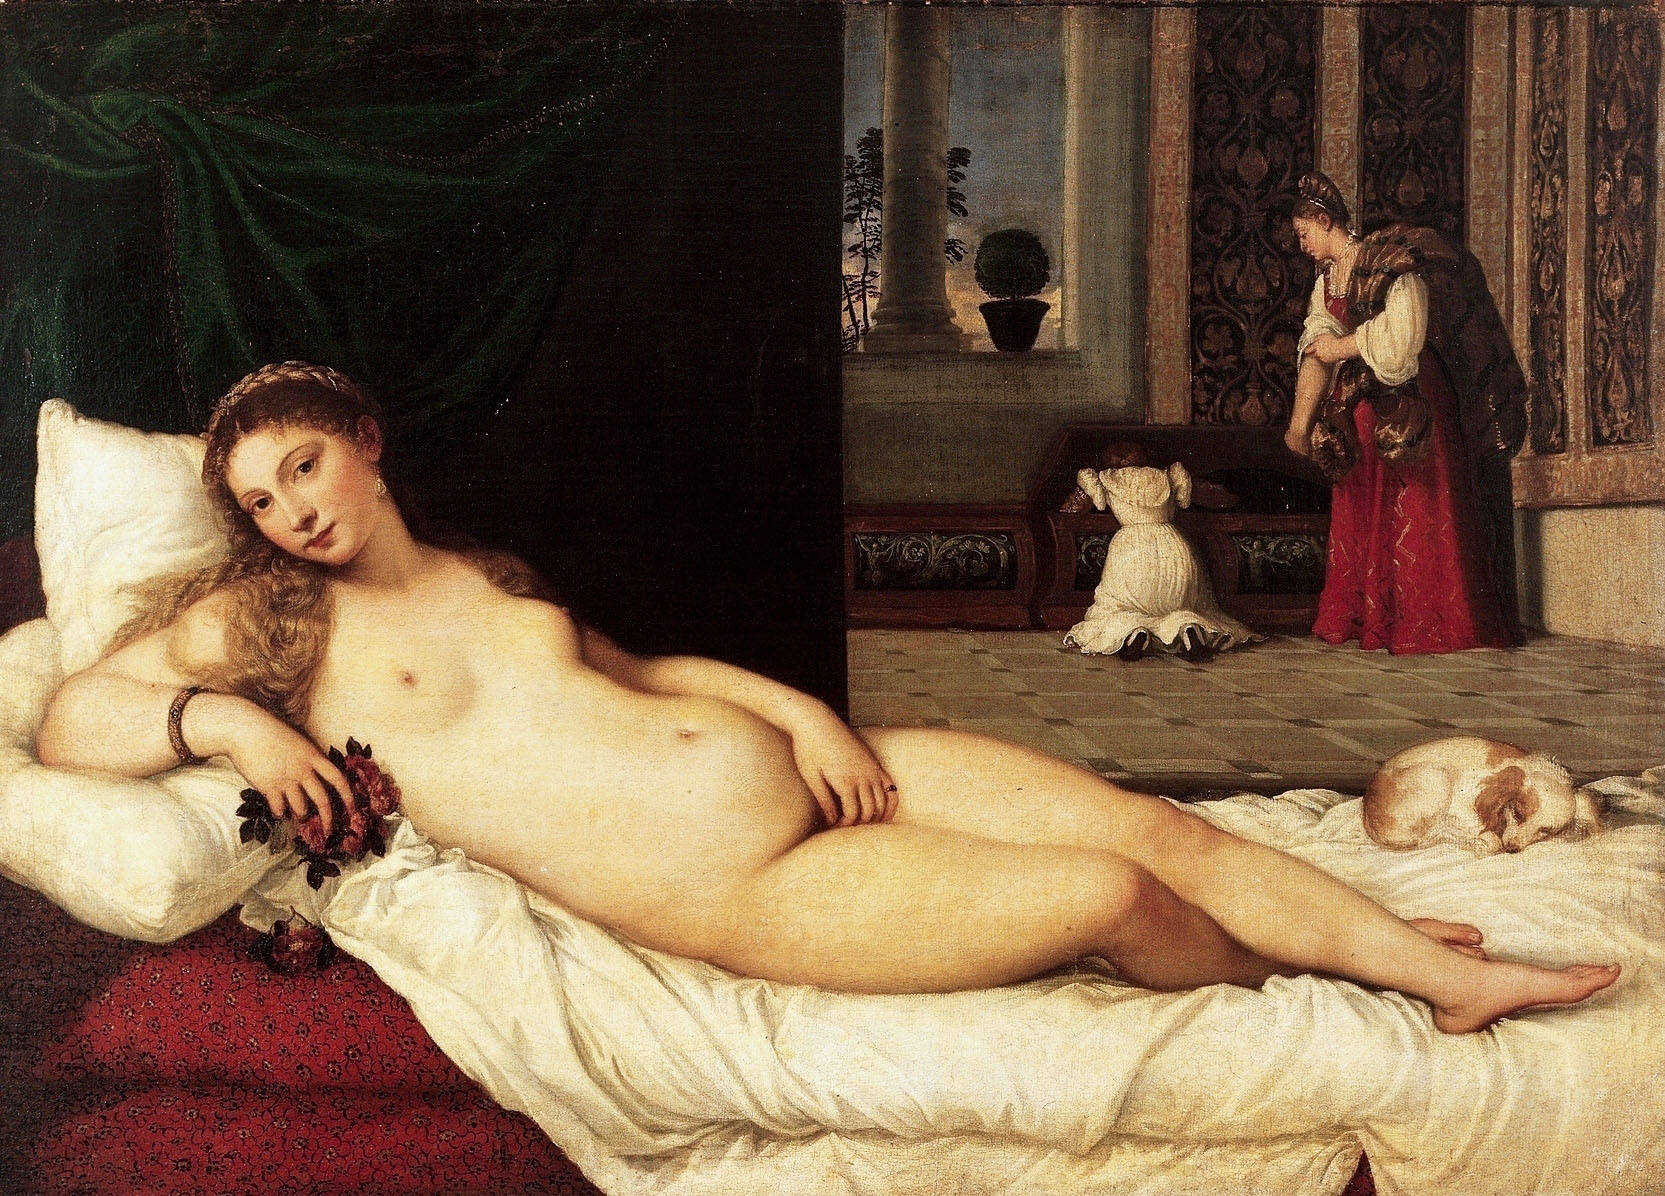 Venus of Urbino 1538 By Tiziano Vecellio (TITIAN)